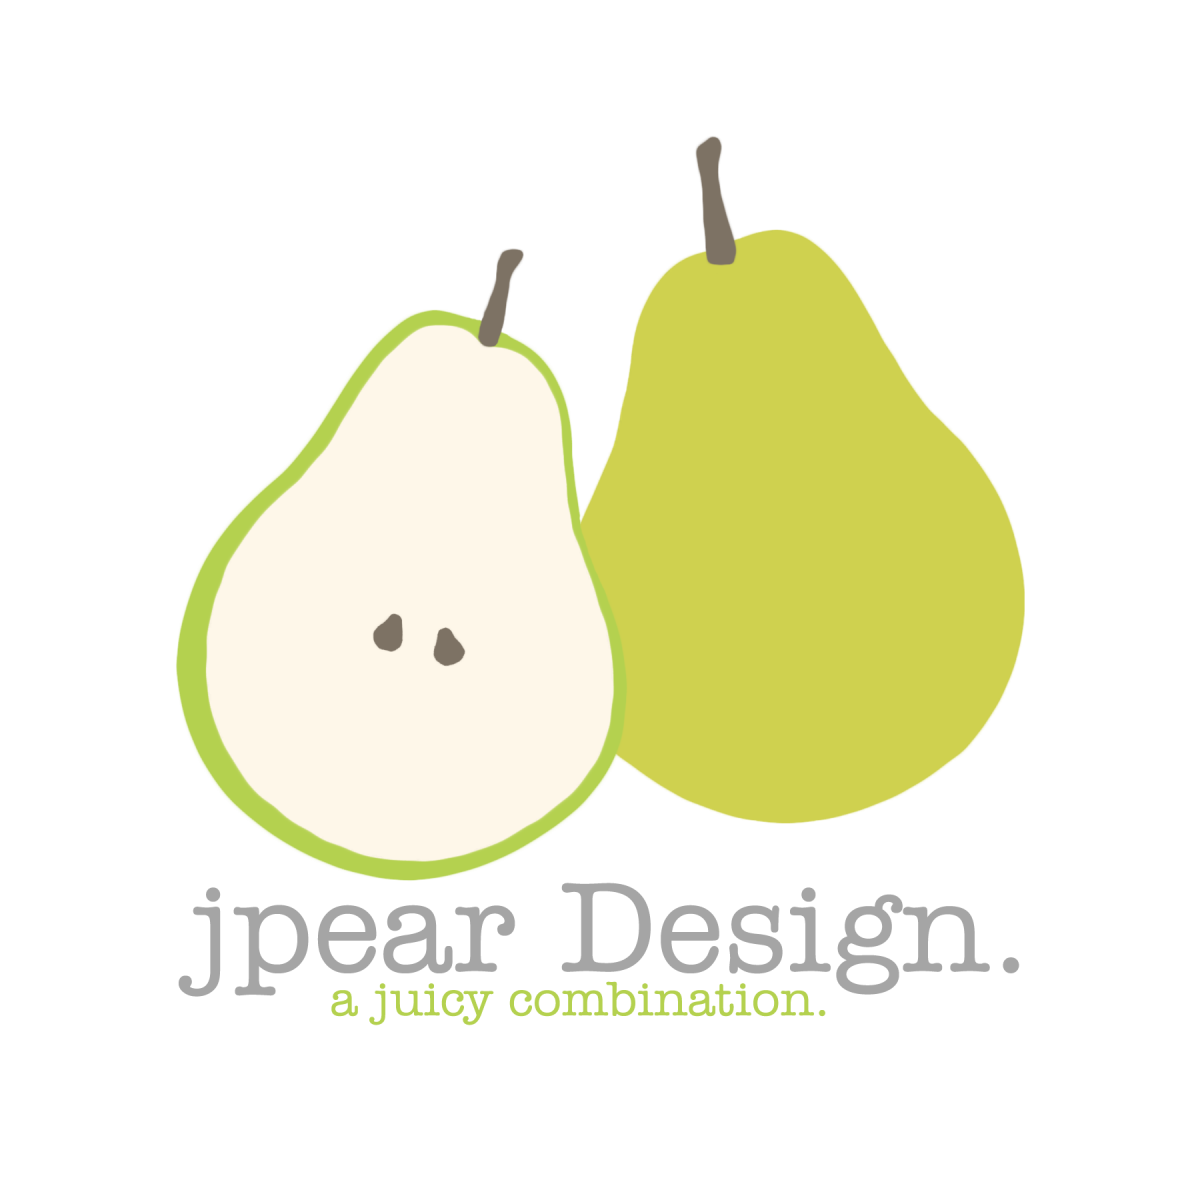 JPear Design logo 